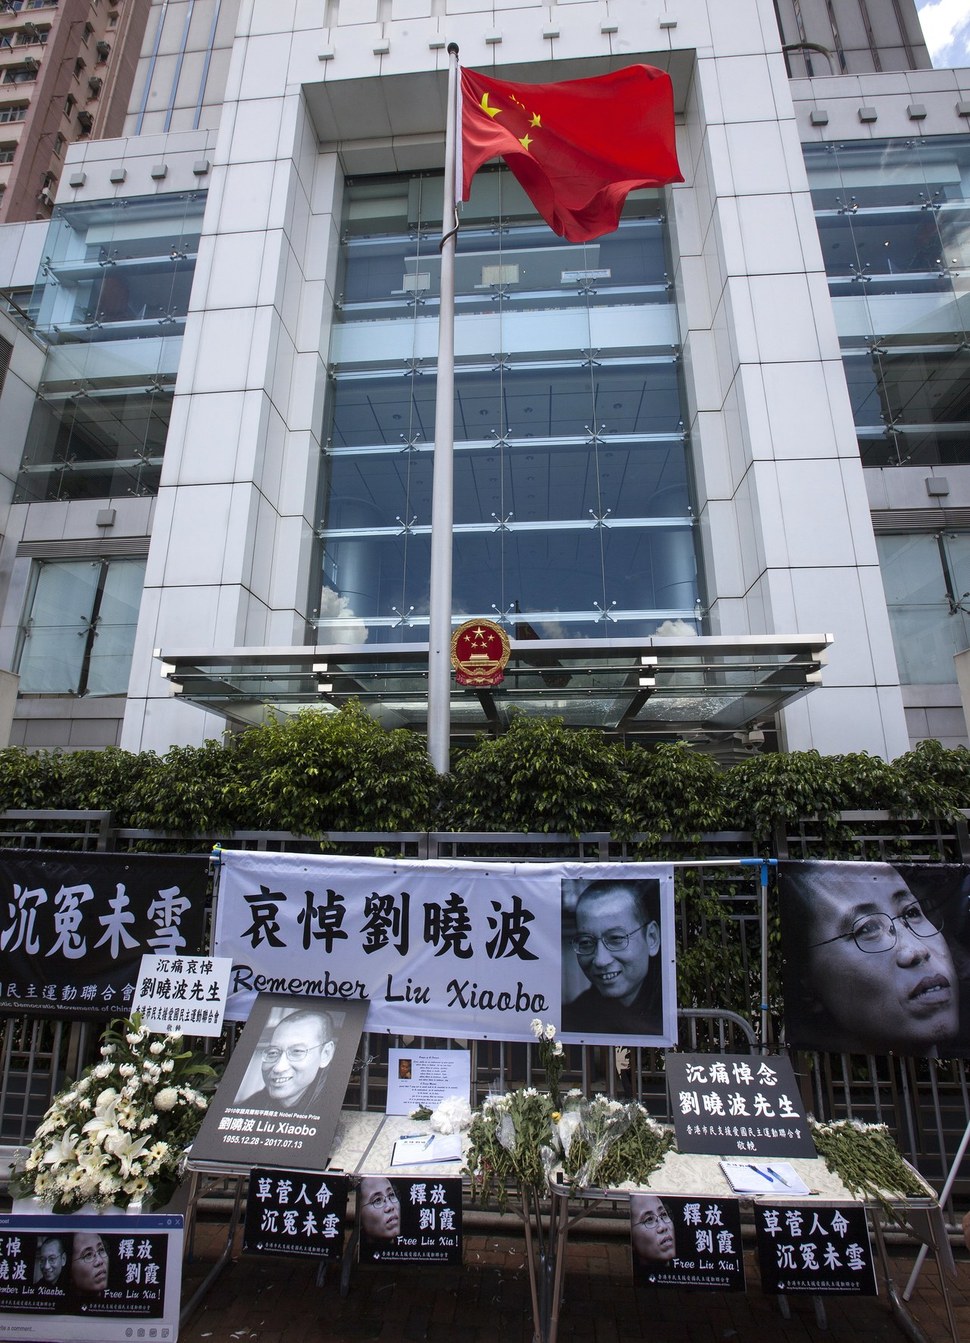 14일 홍콩의 중국연락판공실 앞에 류샤오보를 애도하는 메시지와 꽃이 놓여있다. 홍콩/EPA 연합뉴스